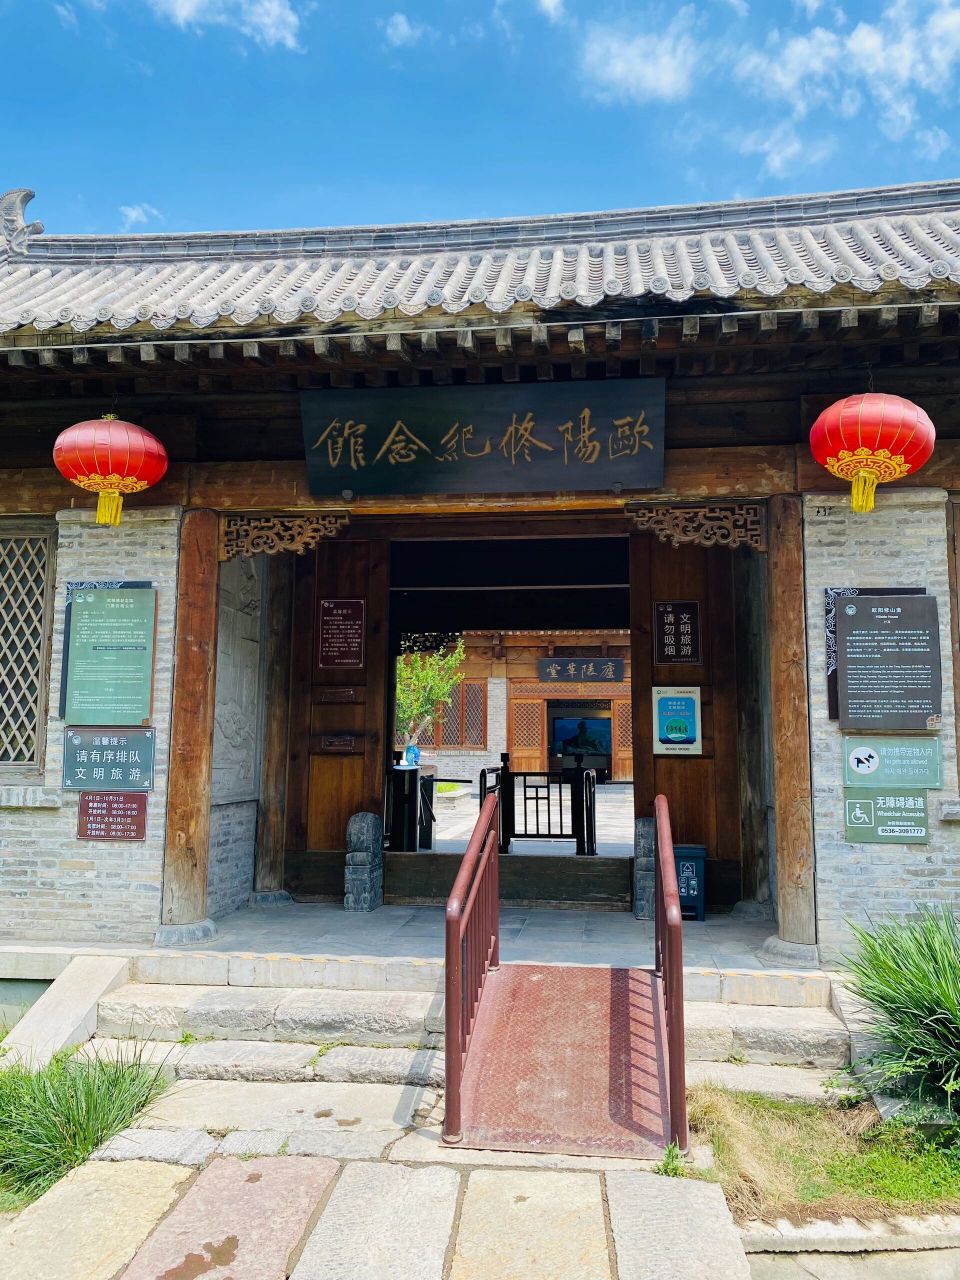 青州古城欧阳修纪念馆 欧阳修纪念馆位于青州古城阜财门不远处,60周岁